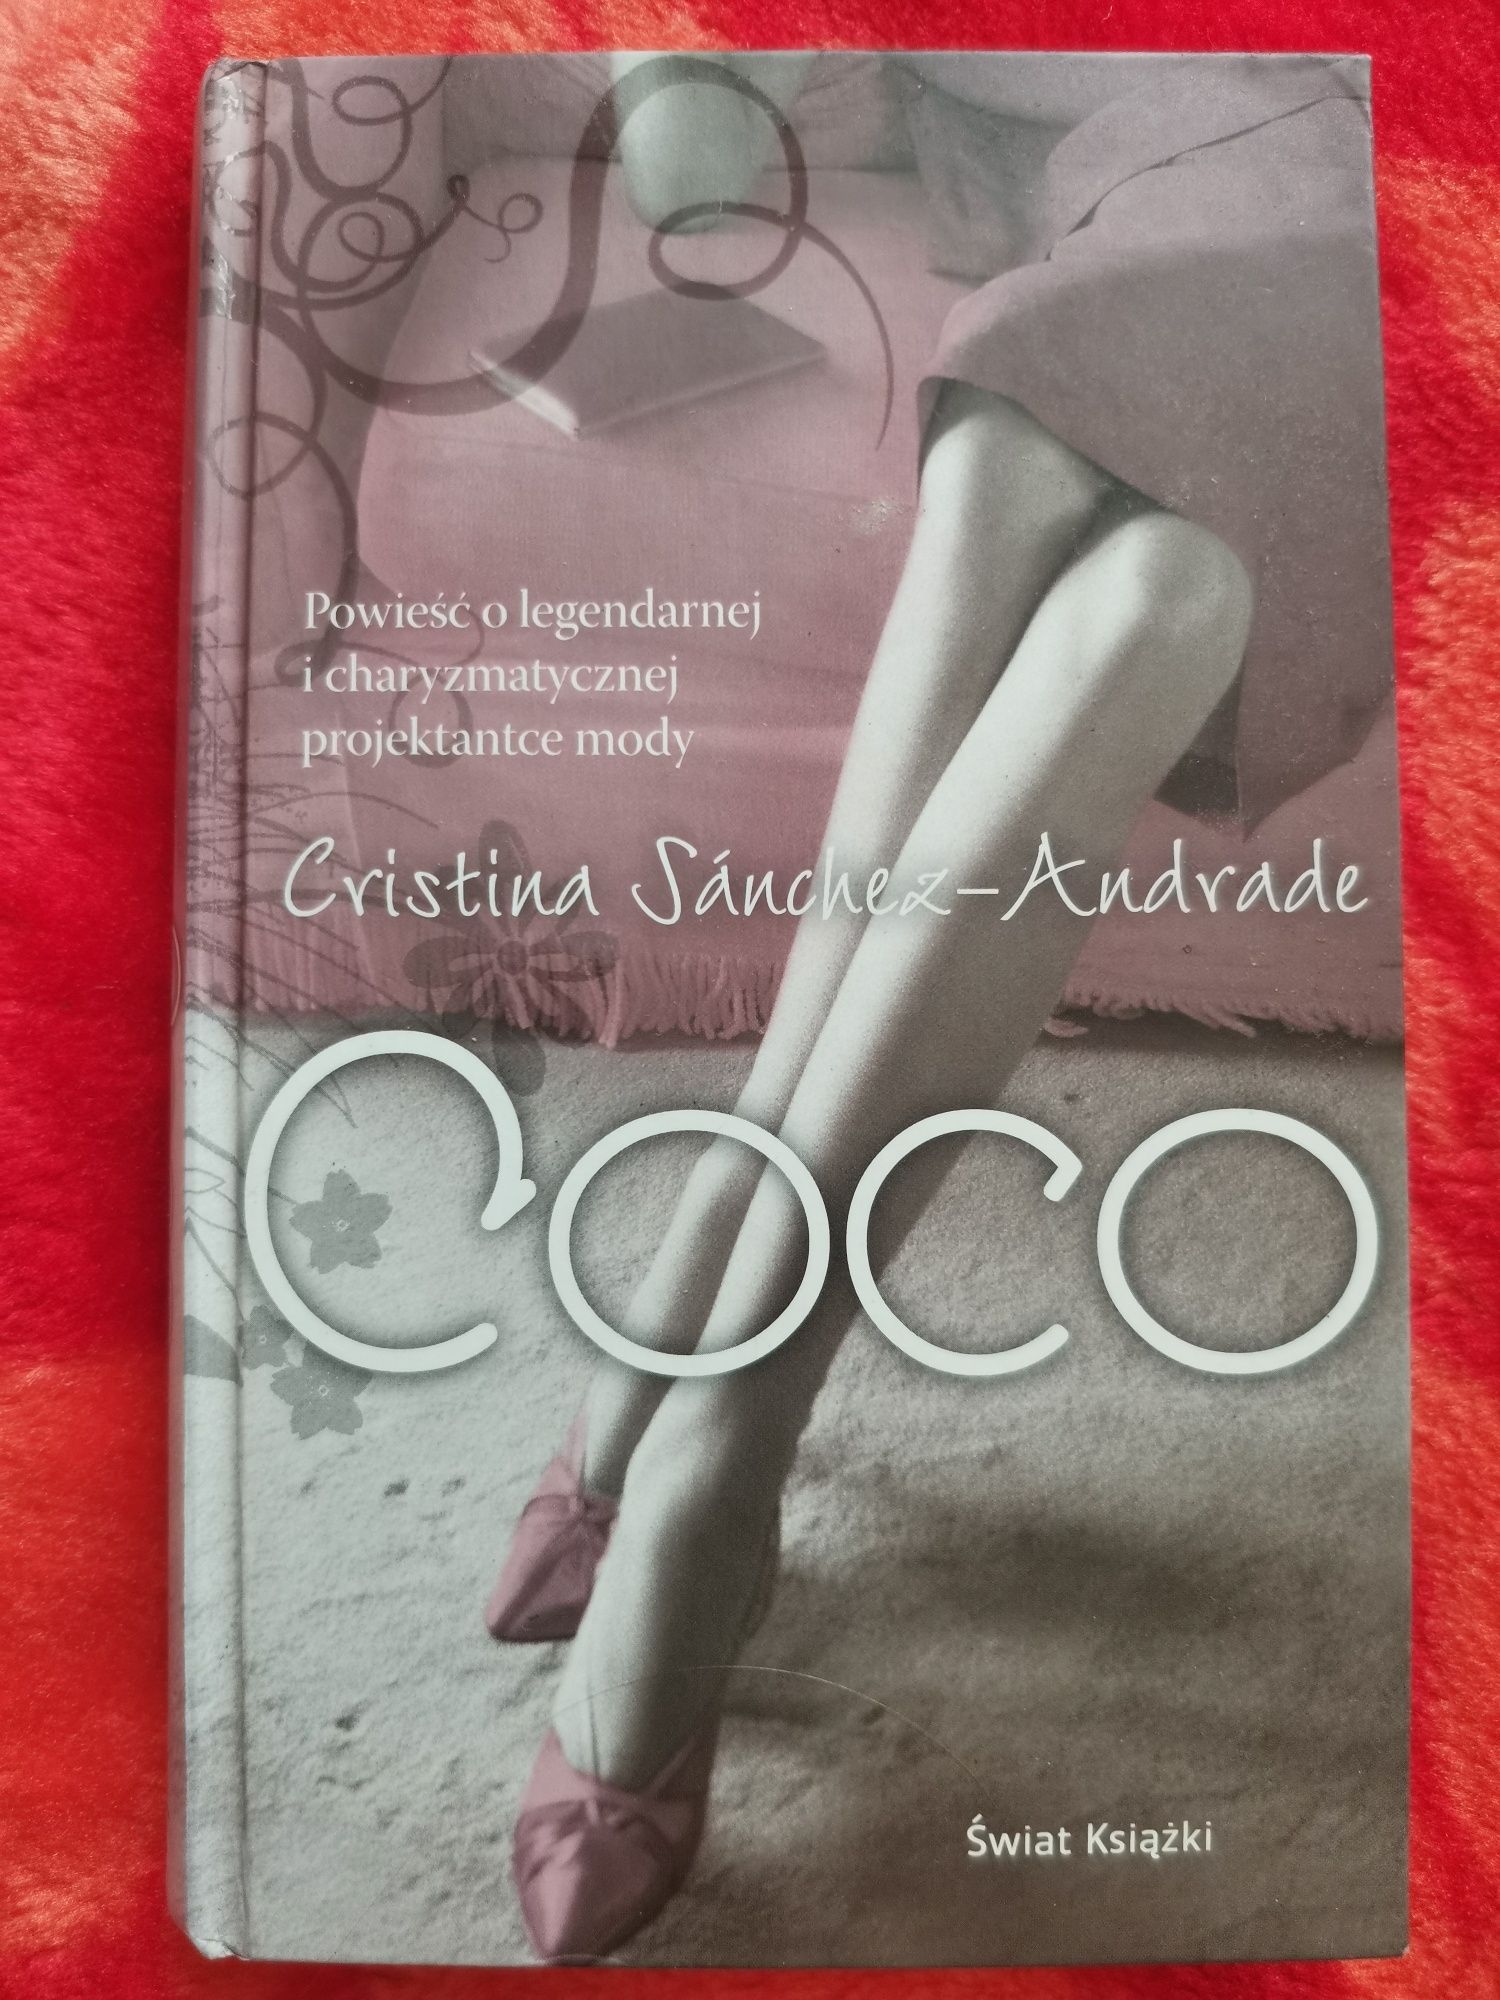 Cristina Sanchez-And radę COCO książka twarda oprawa